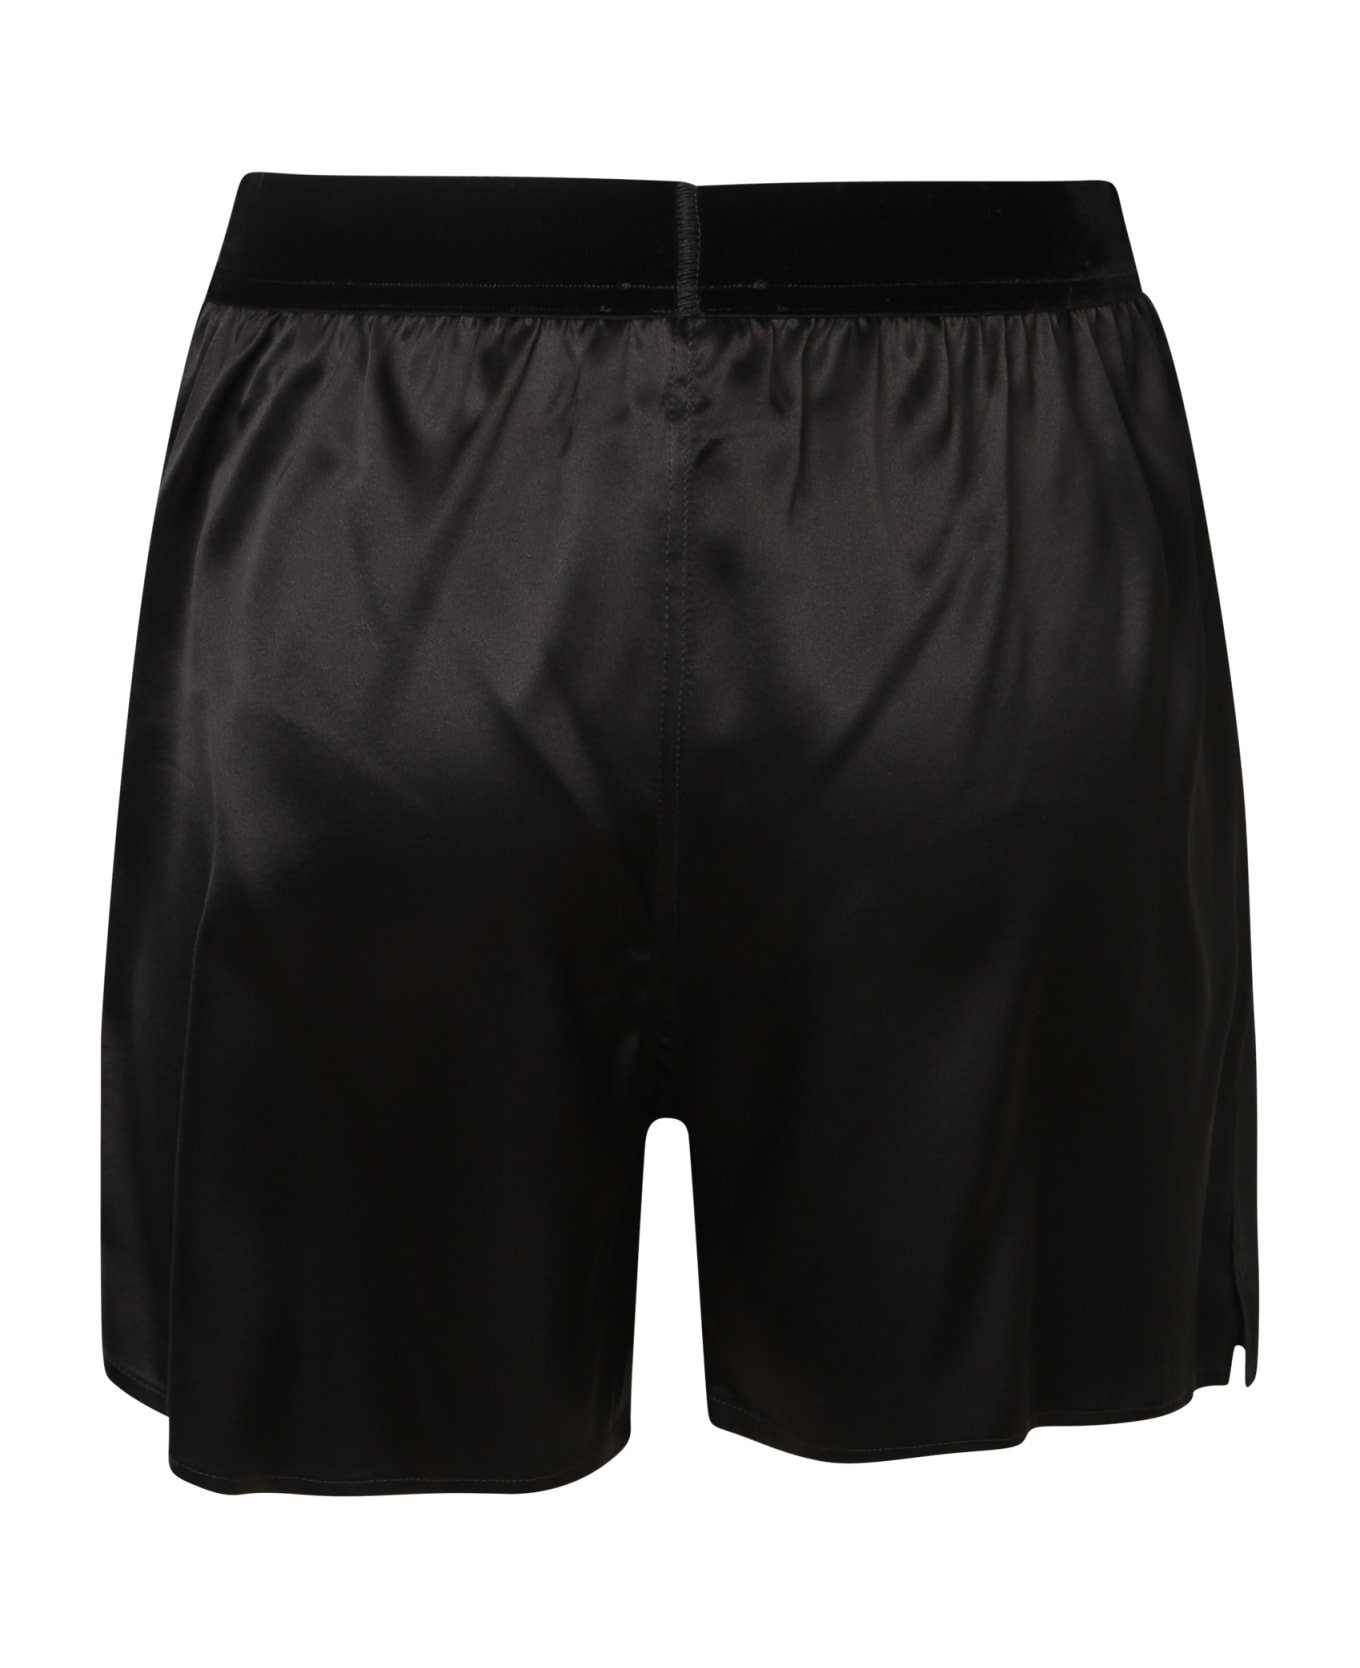 Tom Ford Black Silk Satin Pj Shorts - Black